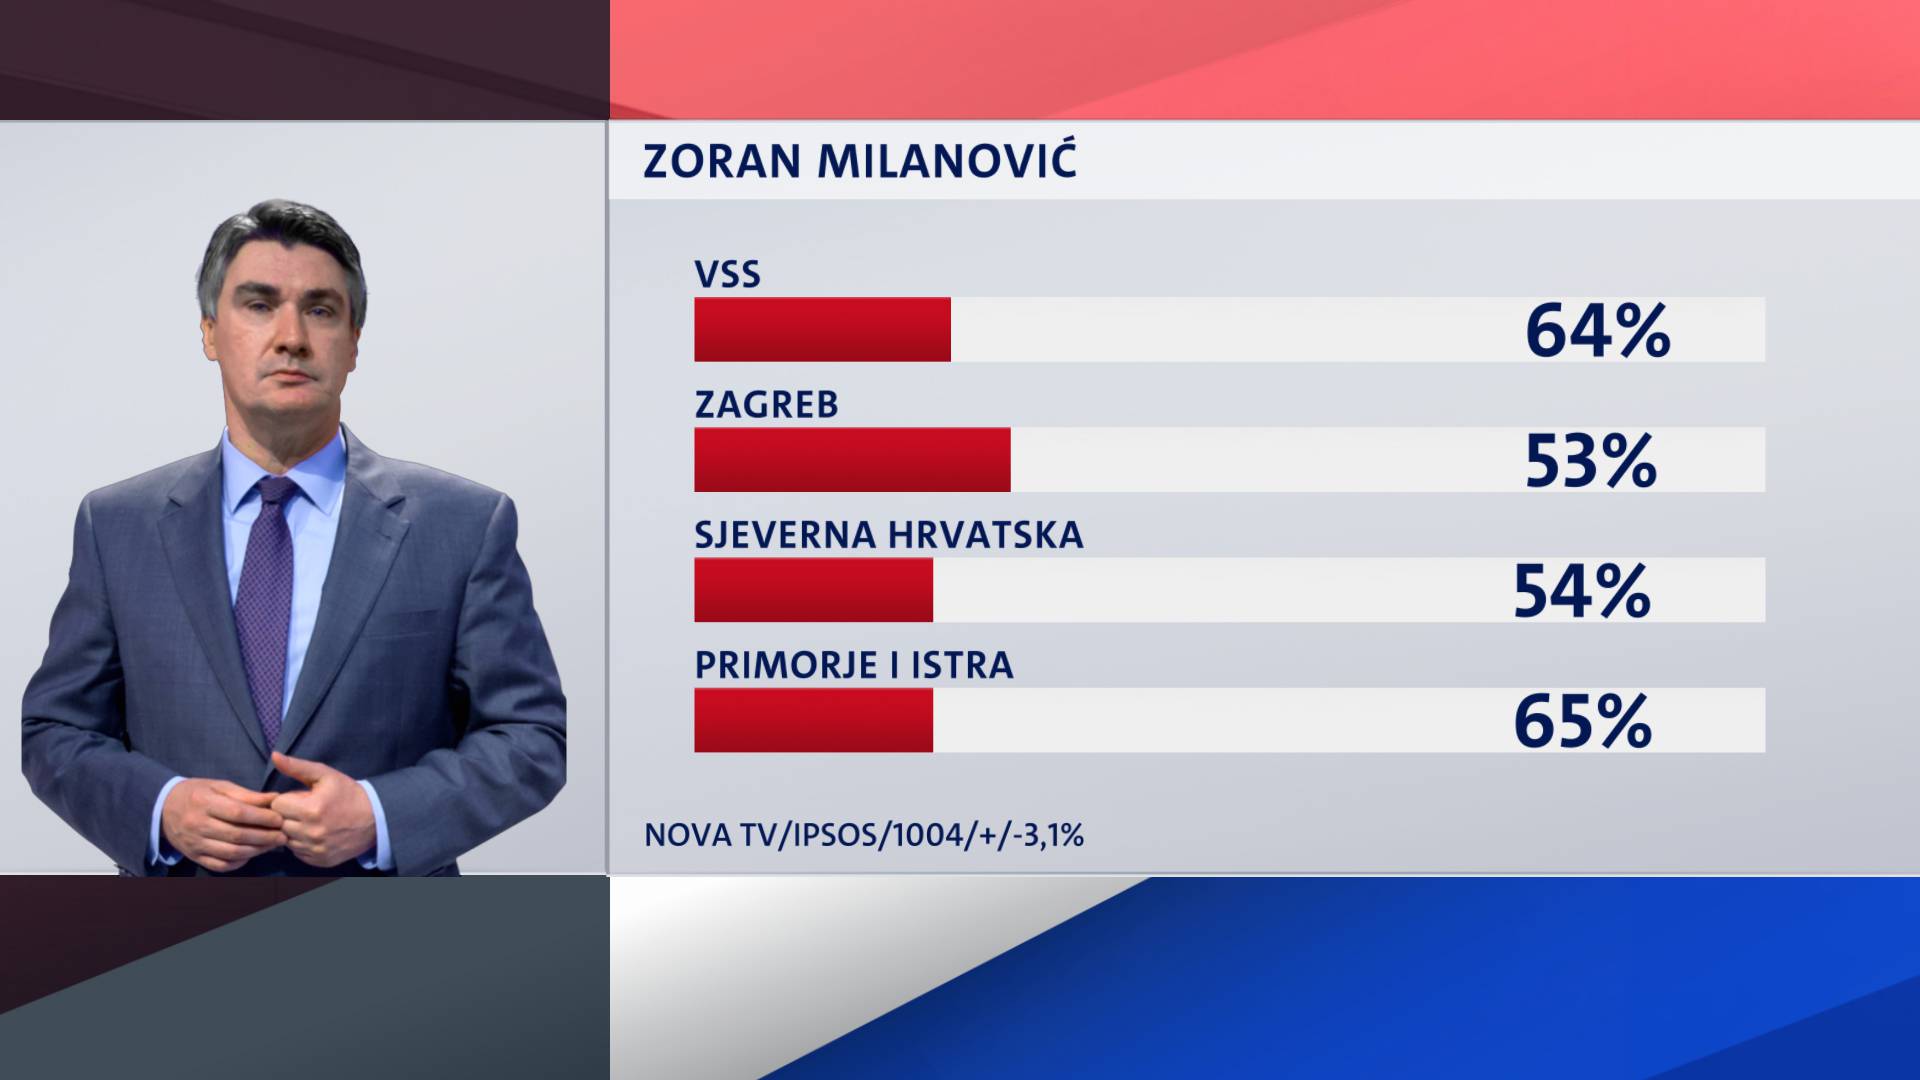 Milanović i Grabar-Kitarović su unutar statističke pogreške...